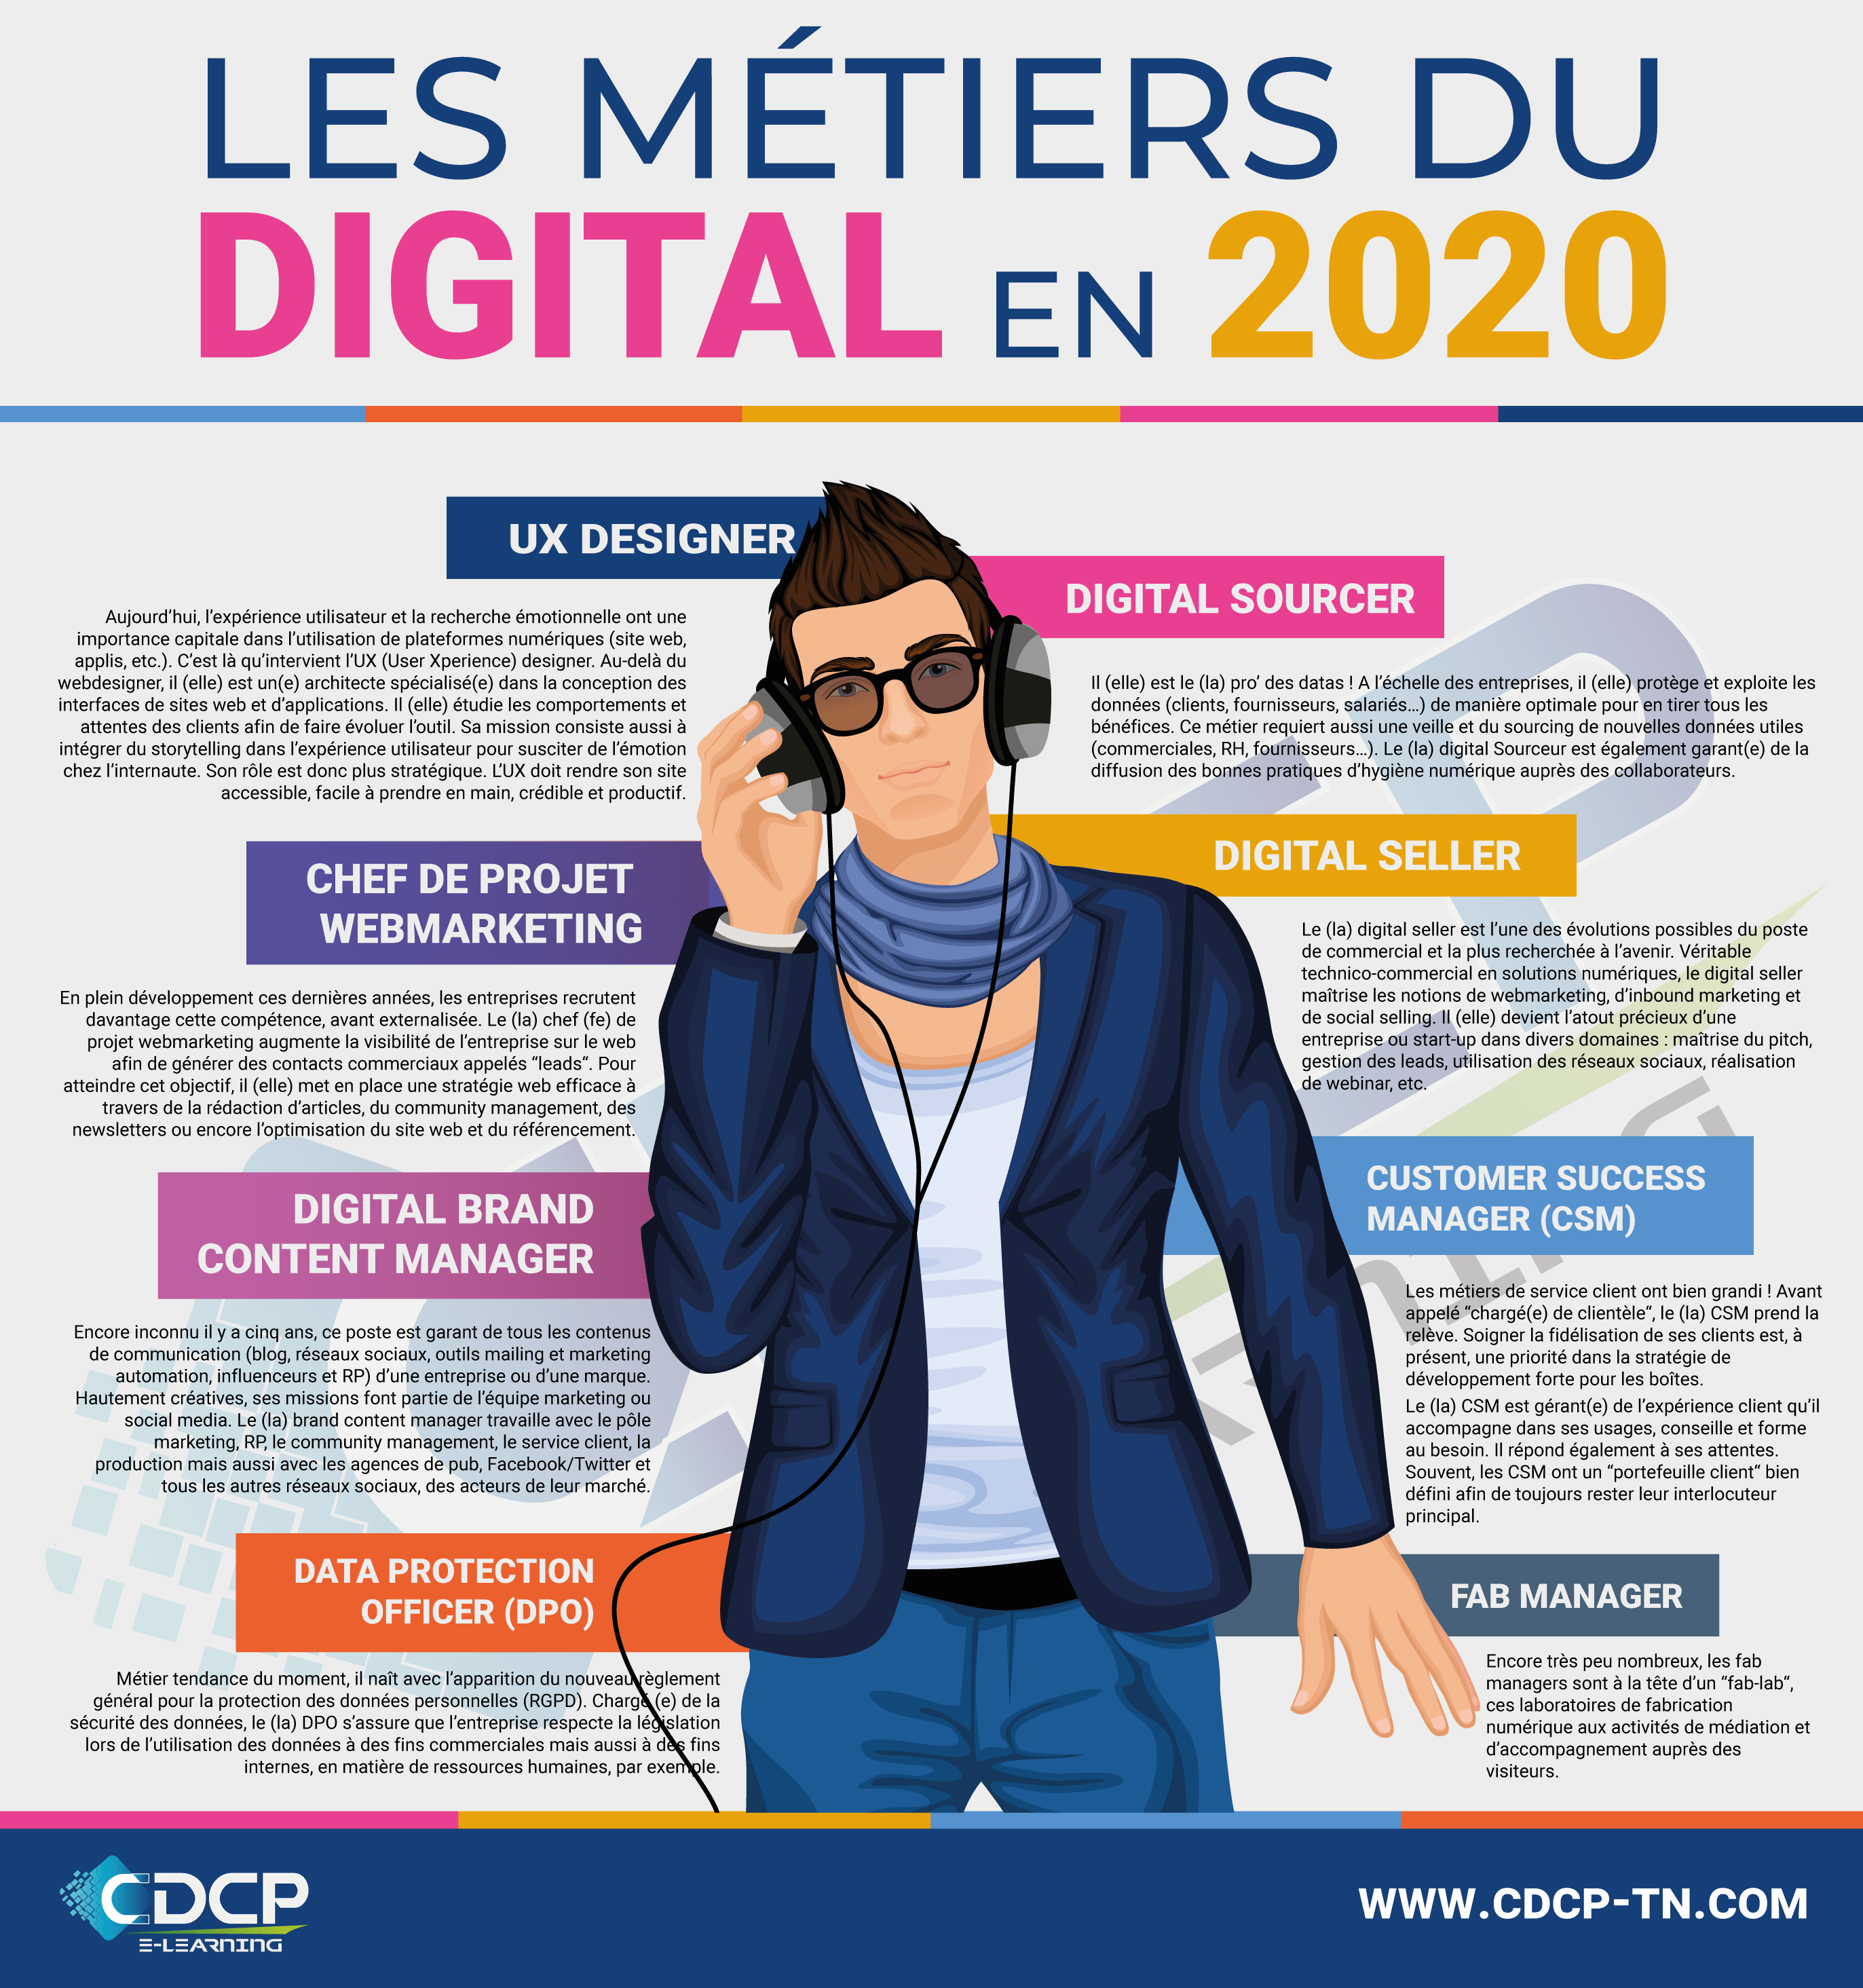 Les nouveaux métiers émergents du digital en 2020